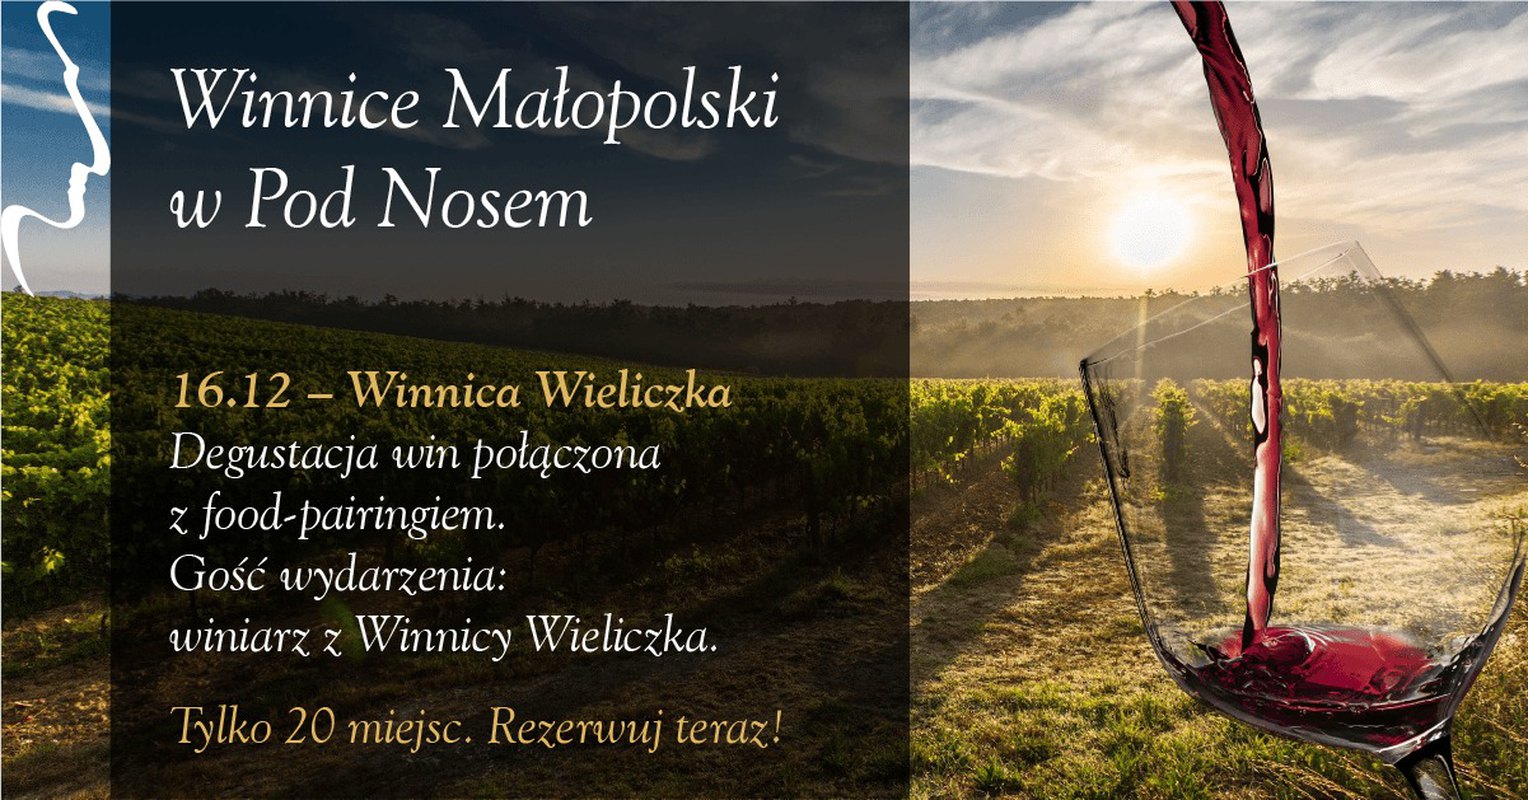 Winnica Wieliczka - Winnice Małopolski w Pod Nosem